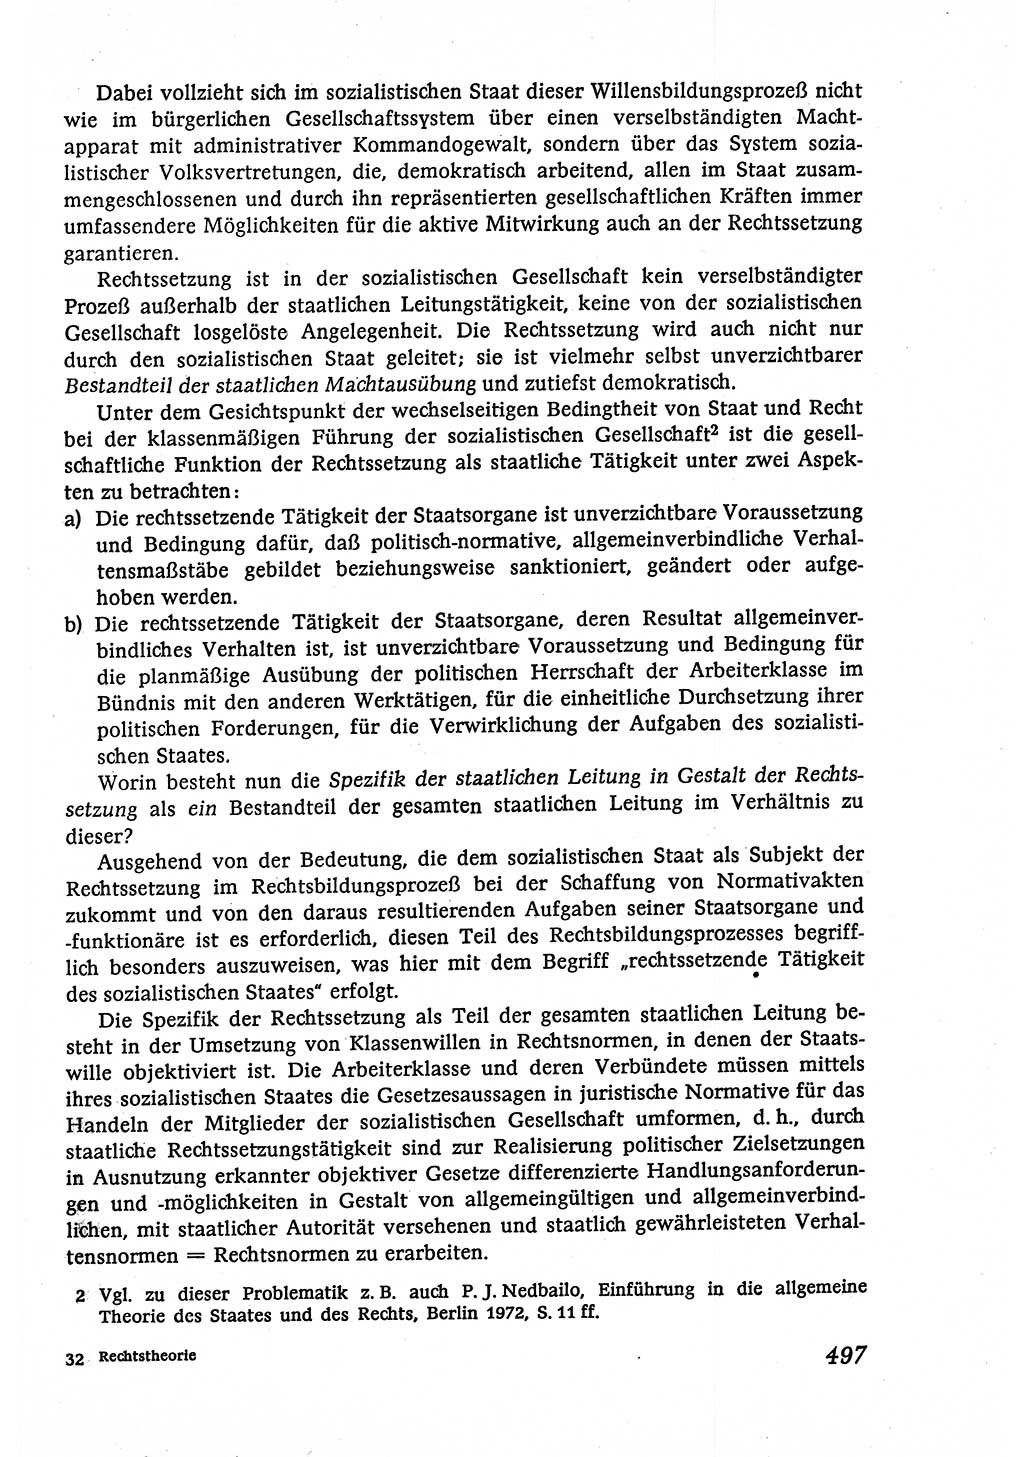 Marxistisch-leninistische (ML) Staats- und Rechtstheorie [Deutsche Demokratische Republik (DDR)], Lehrbuch 1980, Seite 497 (ML St.-R.-Th. DDR Lb. 1980, S. 497)